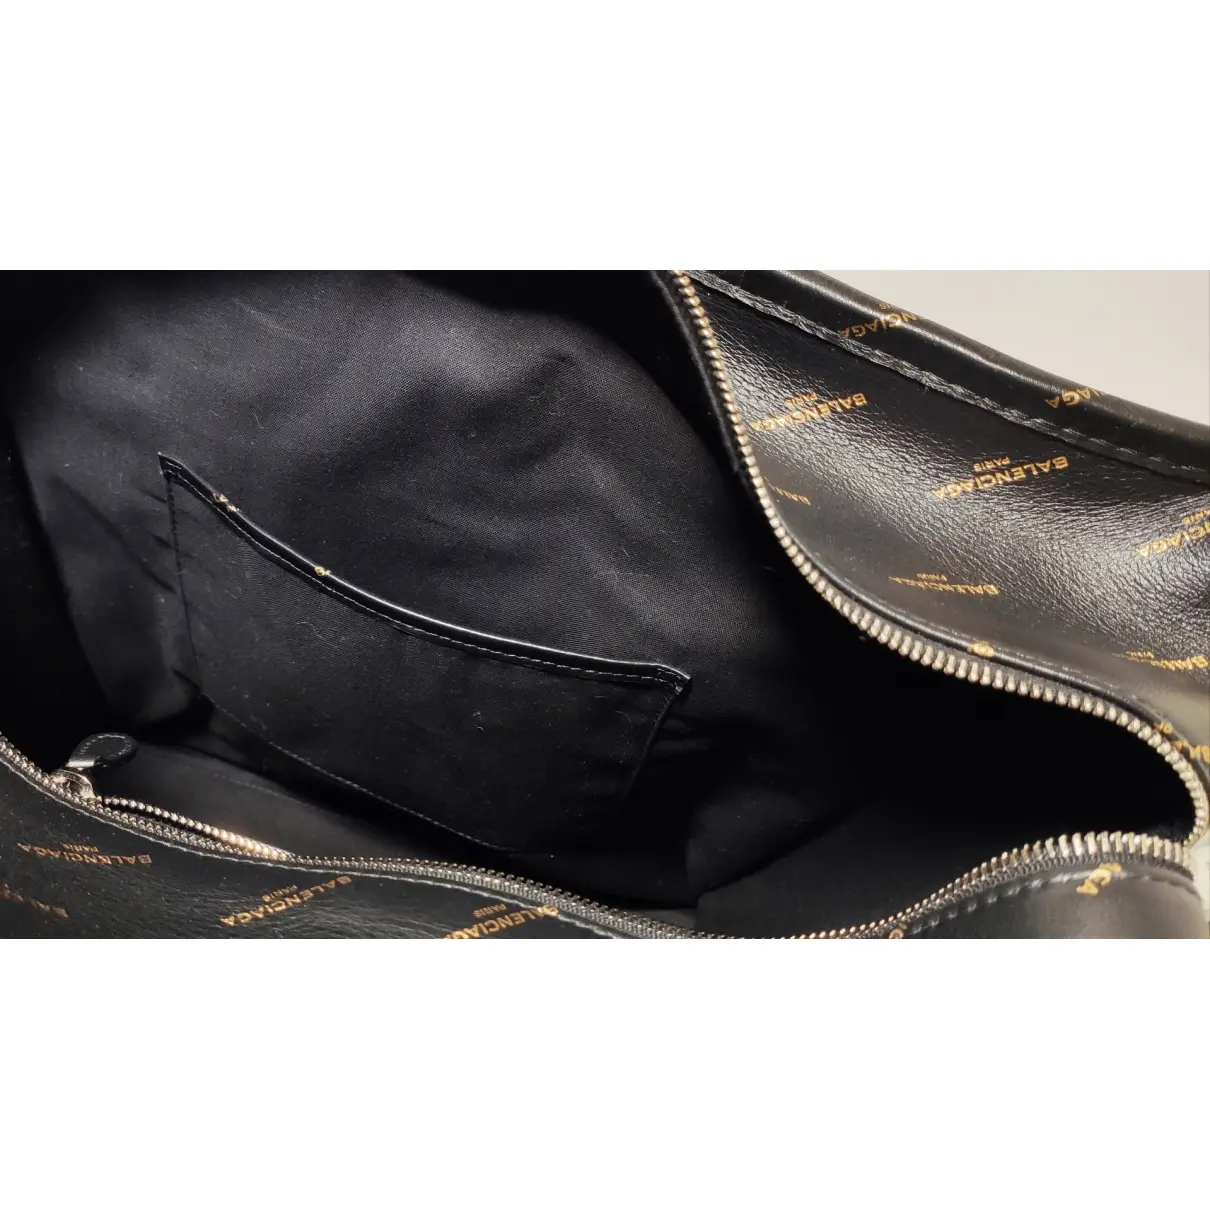 Bazar Bag leather tote Balenciaga